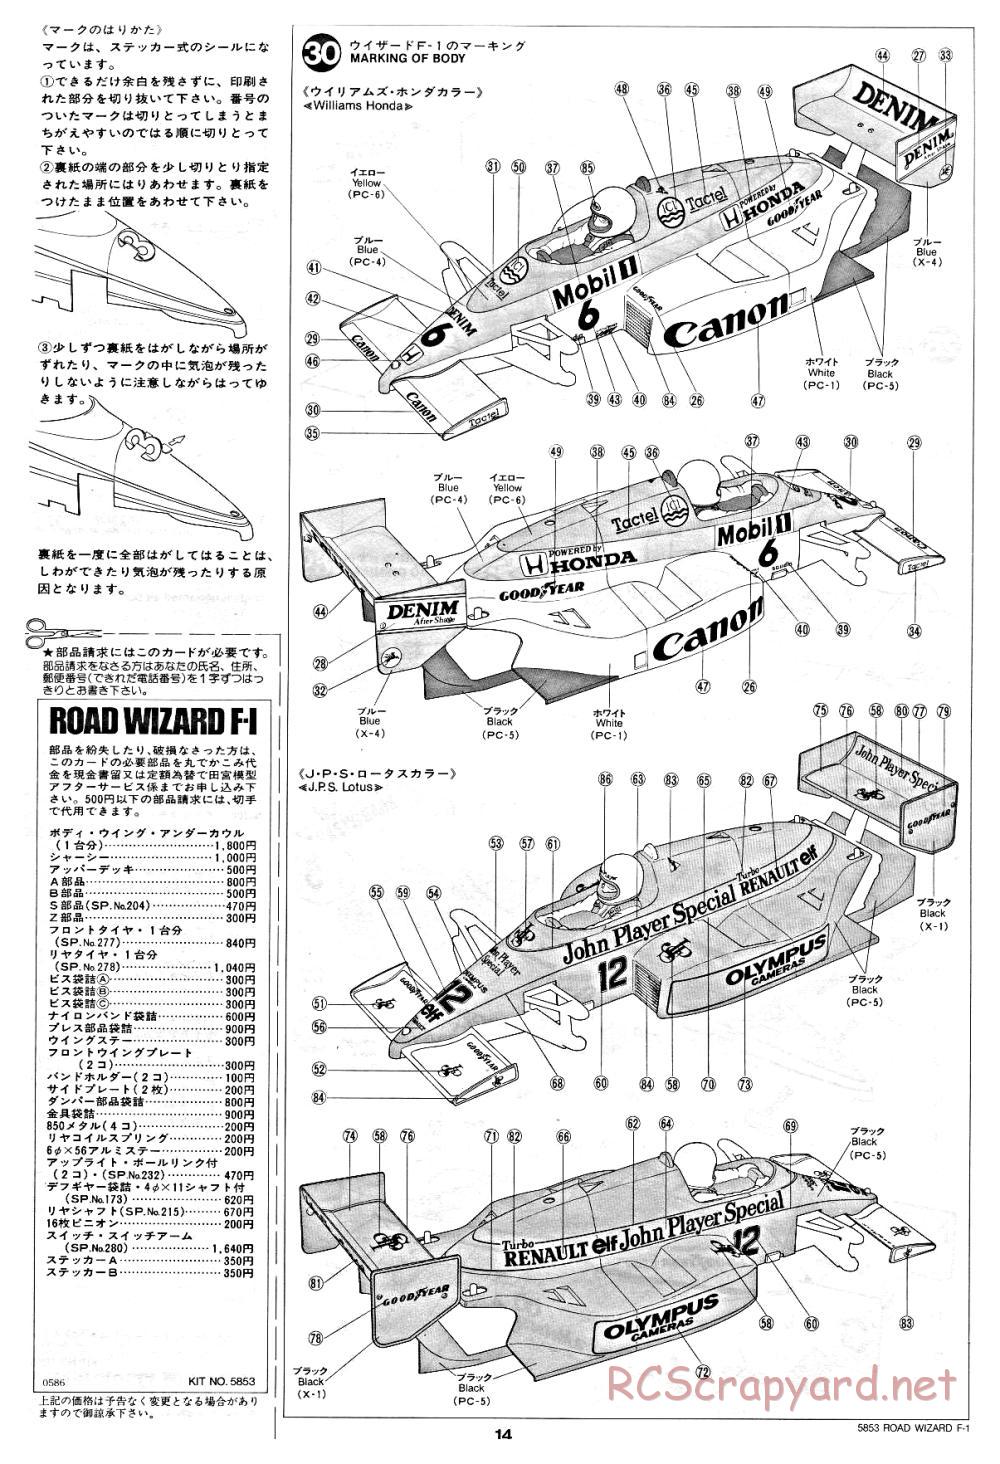 Tamiya - Road Wizard F-1 - 58053 - Manual - Page 14